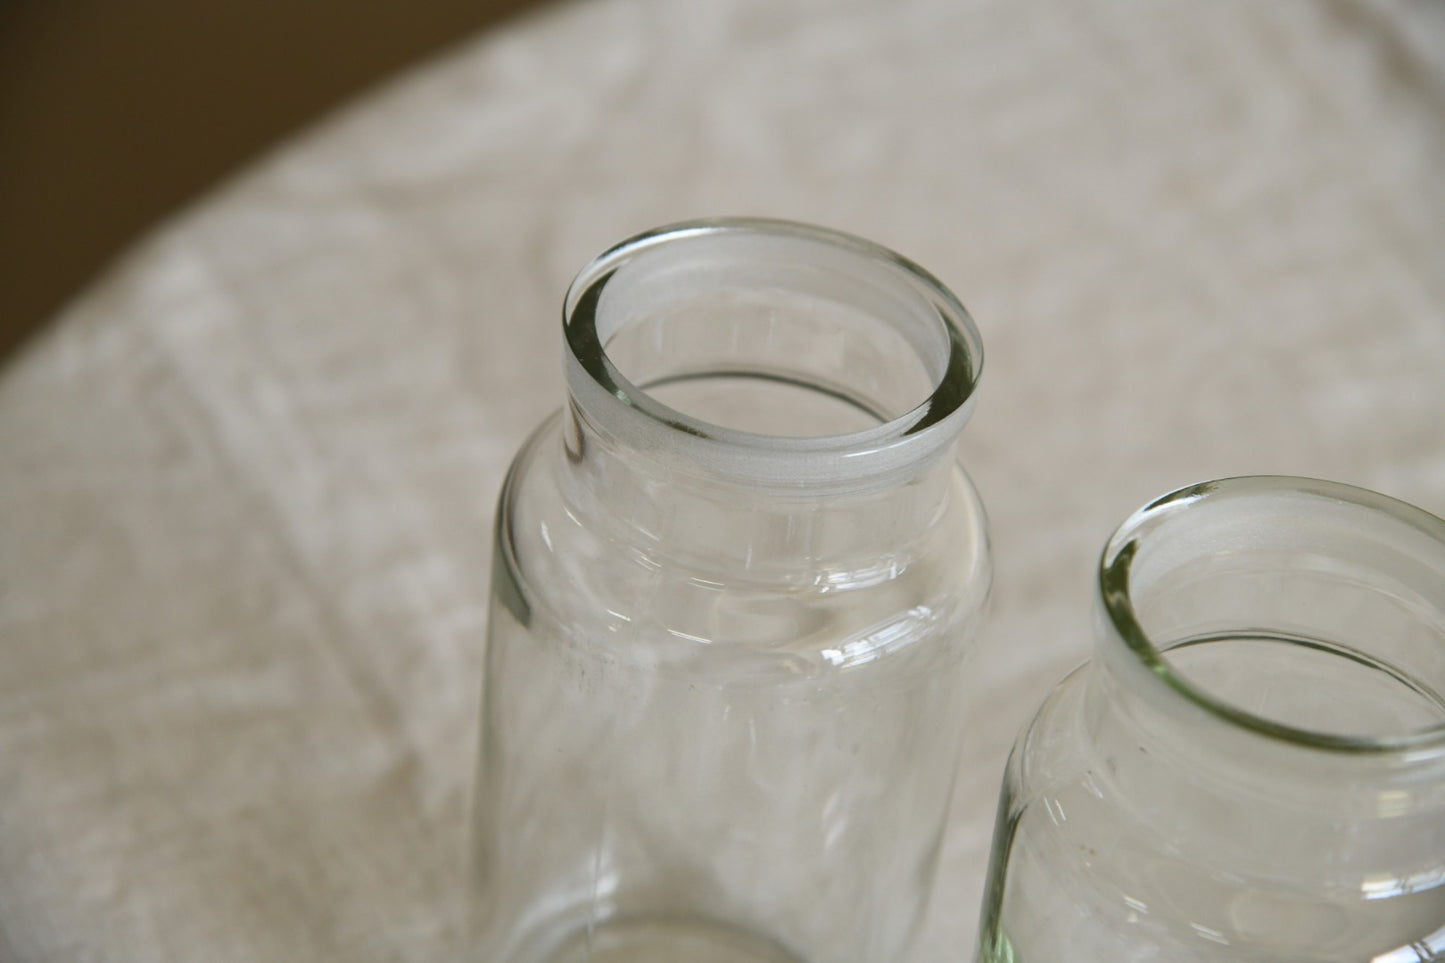 3 Vintage Glass Sweet Jars